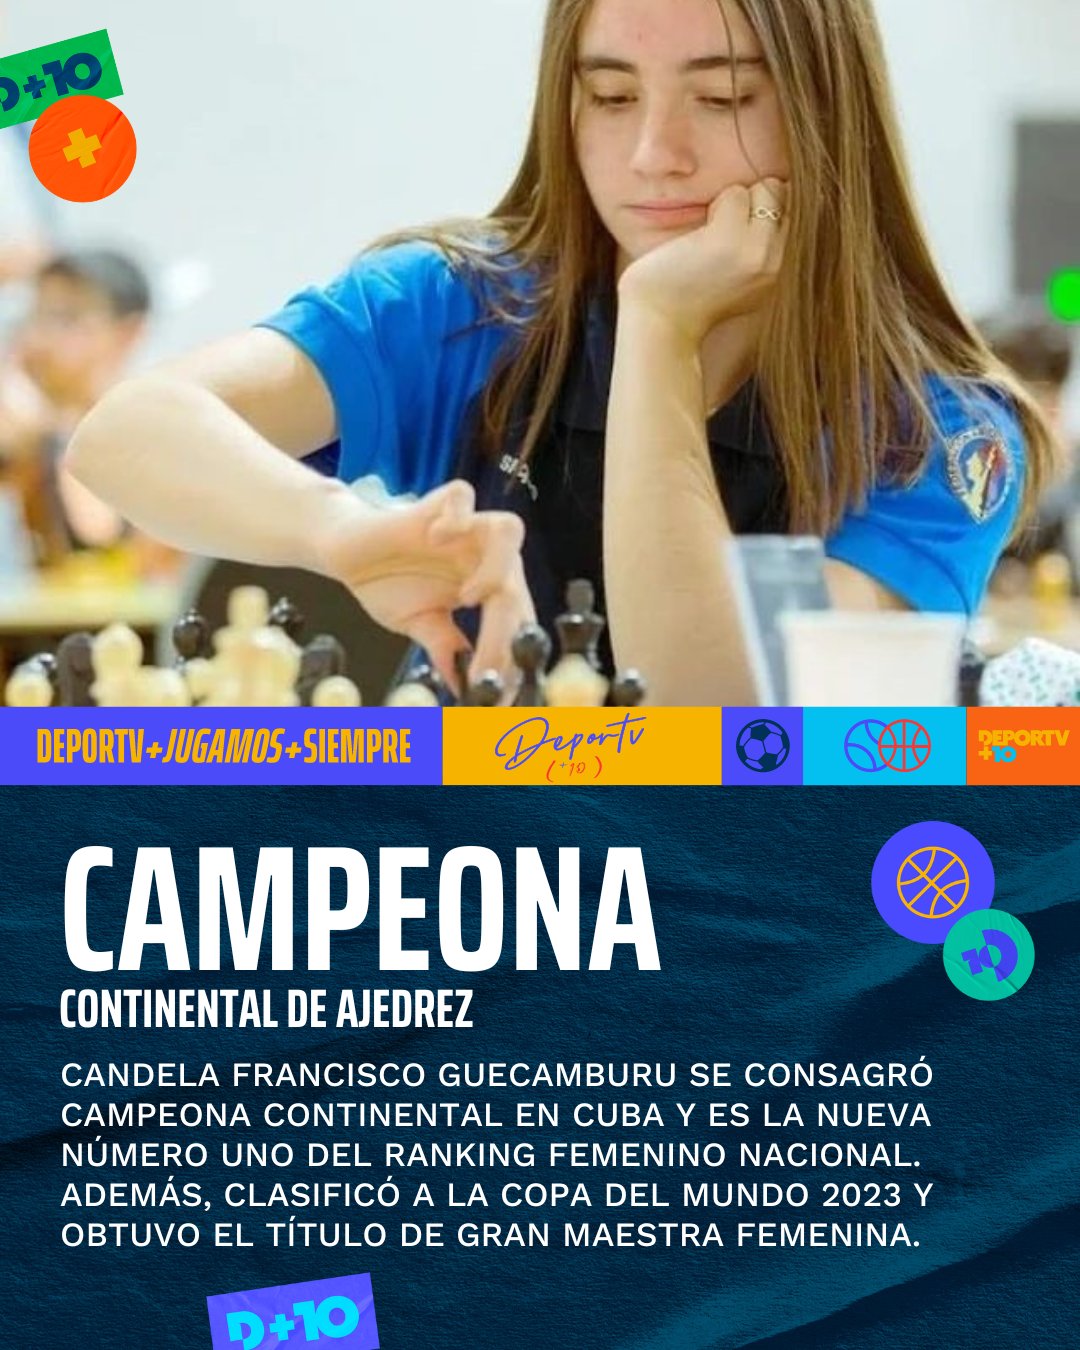 Deportes Argentina on X: #Ajedrez Candela Francisco Guecamburu se consagró  campeona continental en Cuba 🇨🇺 y es la nueva número uno del ranking  femenino nacional. ¡Felicitaciones!  / X